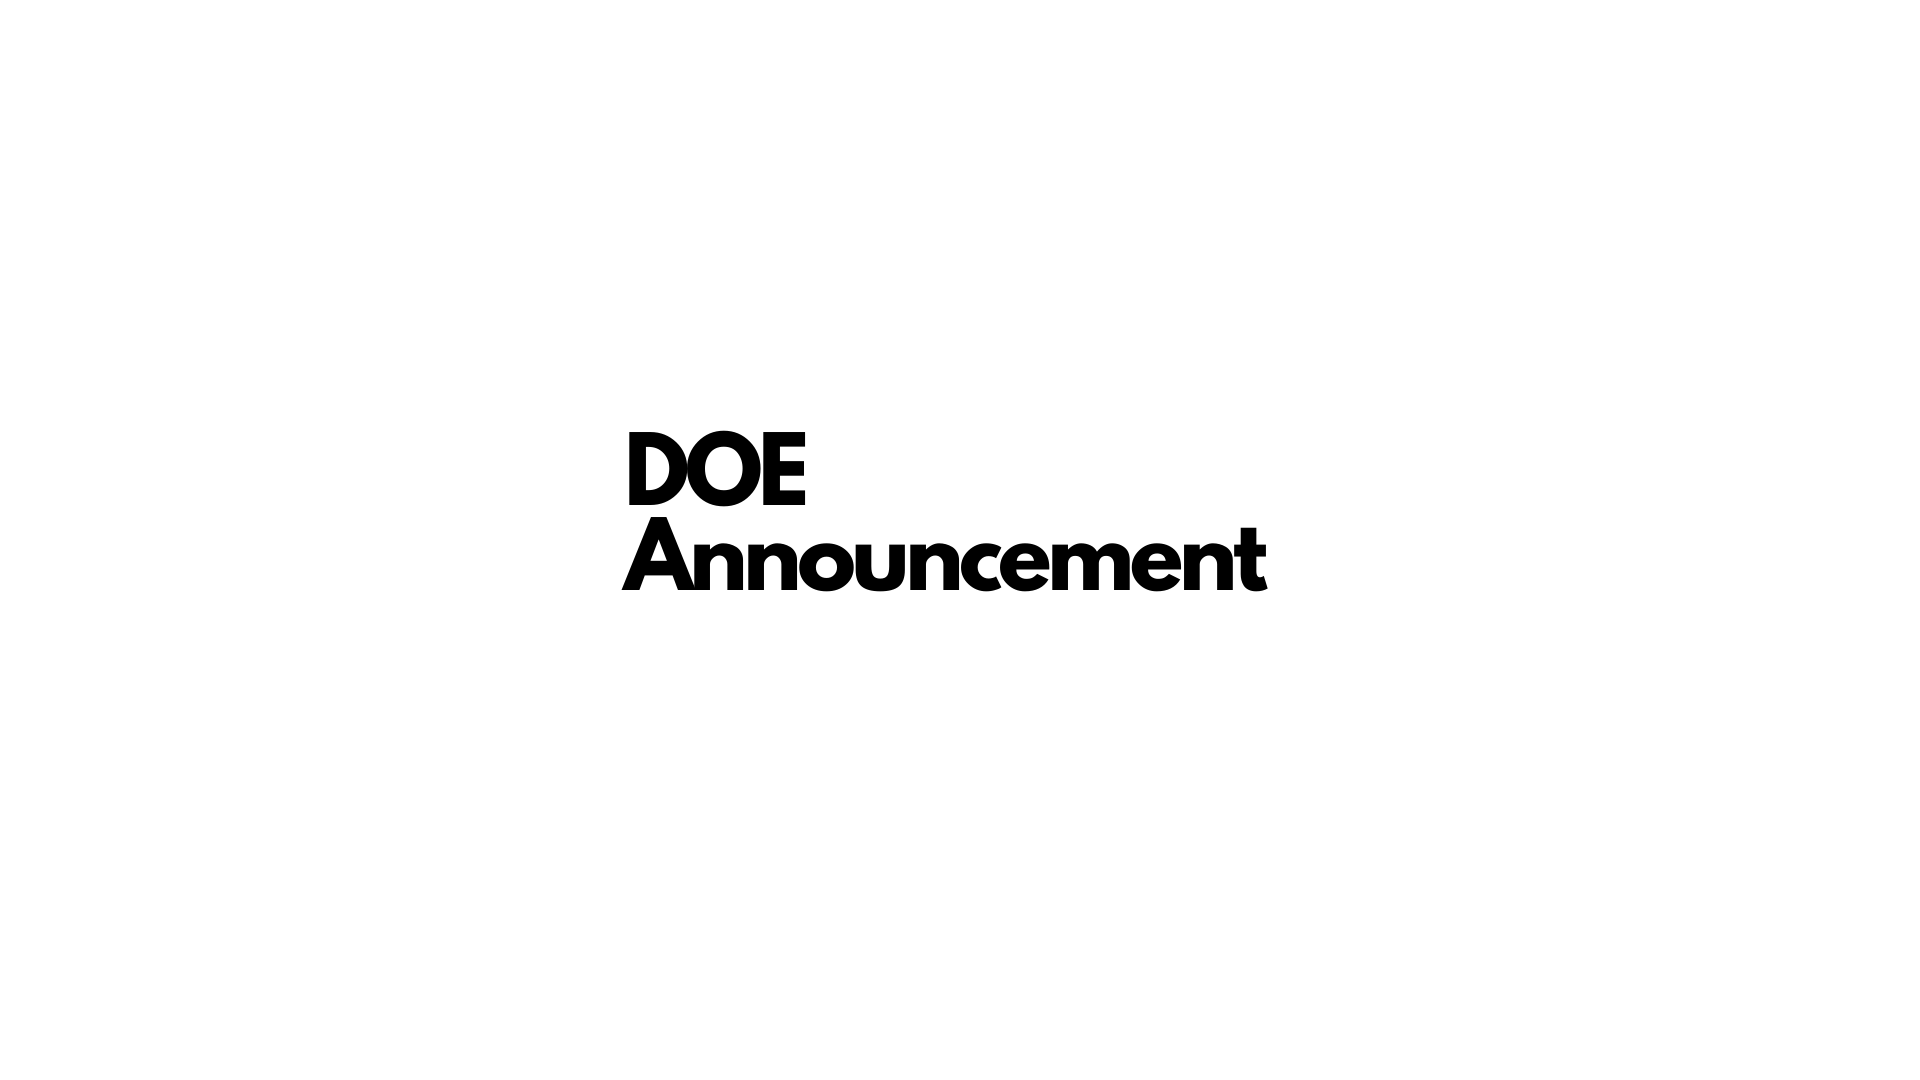 DOE Announcement